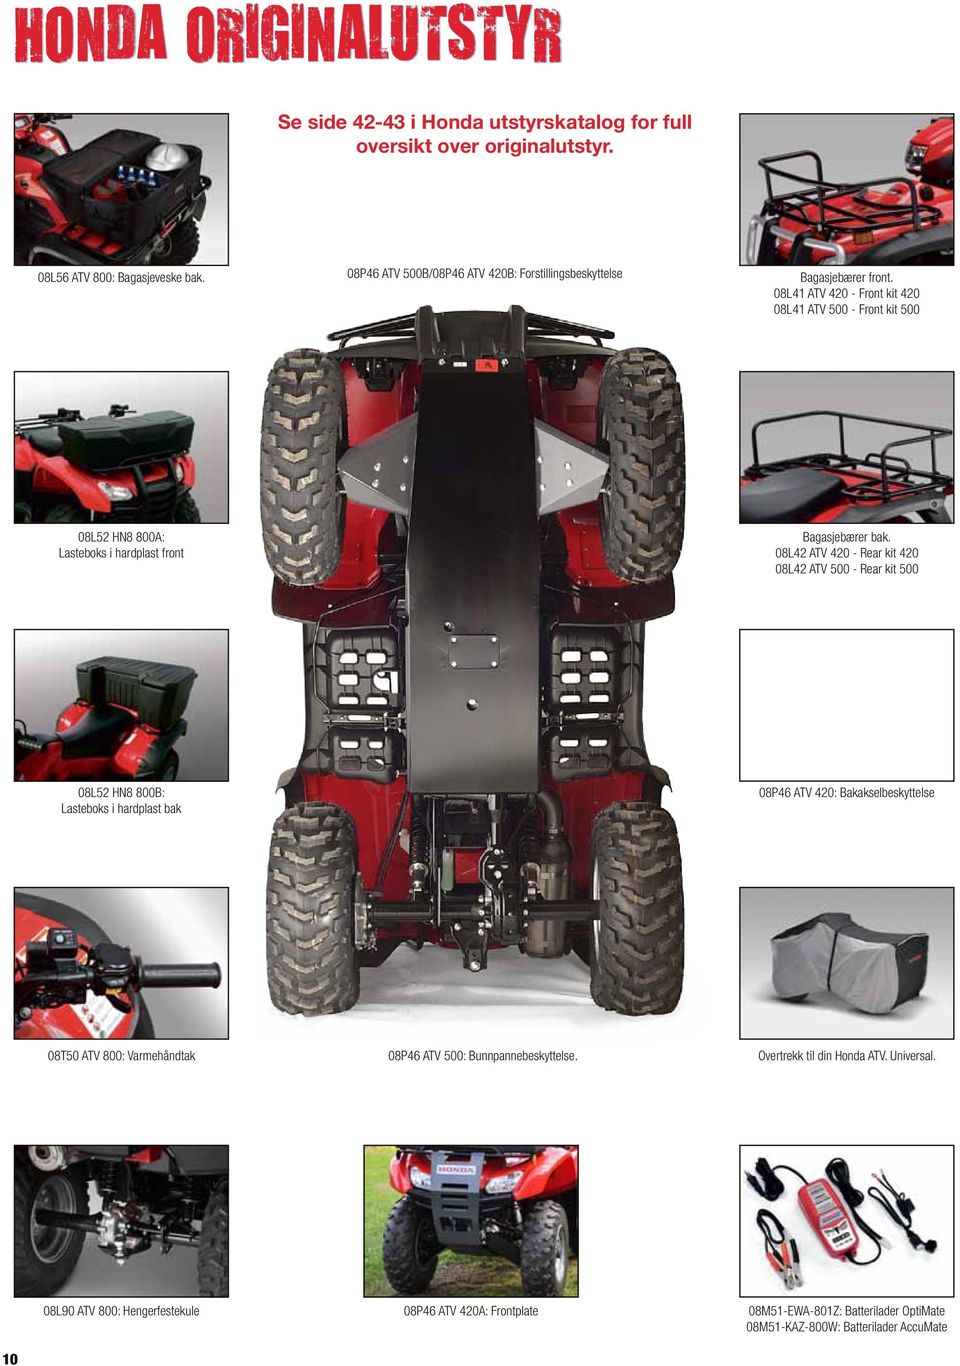 08L41 ATV 420 - Front kit 420 08L41 ATV 500 - Front kit 500 08L52 HN8 800A: Lasteboks i hardplast front Bagasjebærer bak.